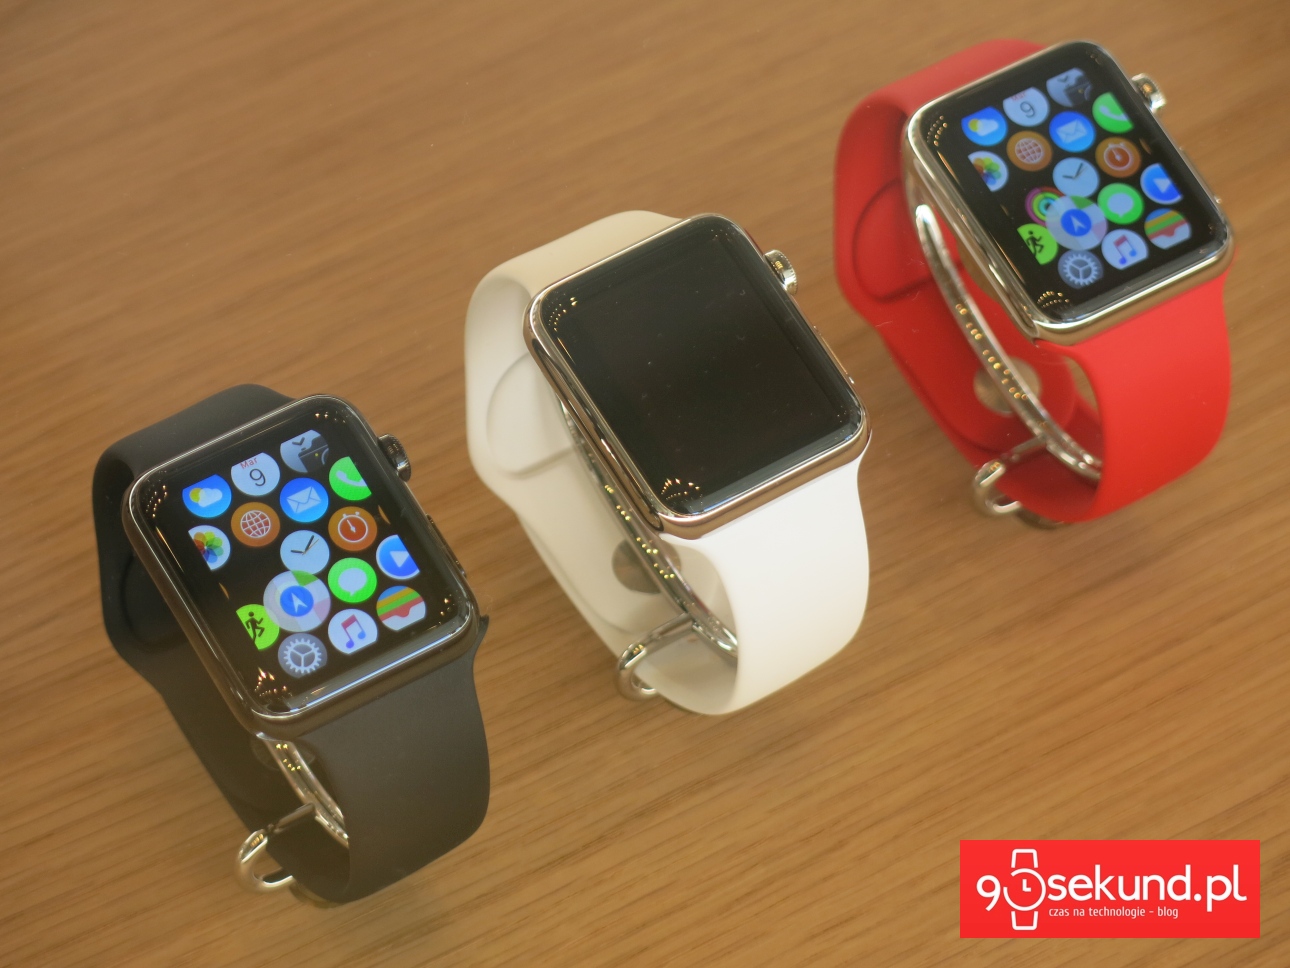 Apple Watch 1-gen. - 90sekund.pl